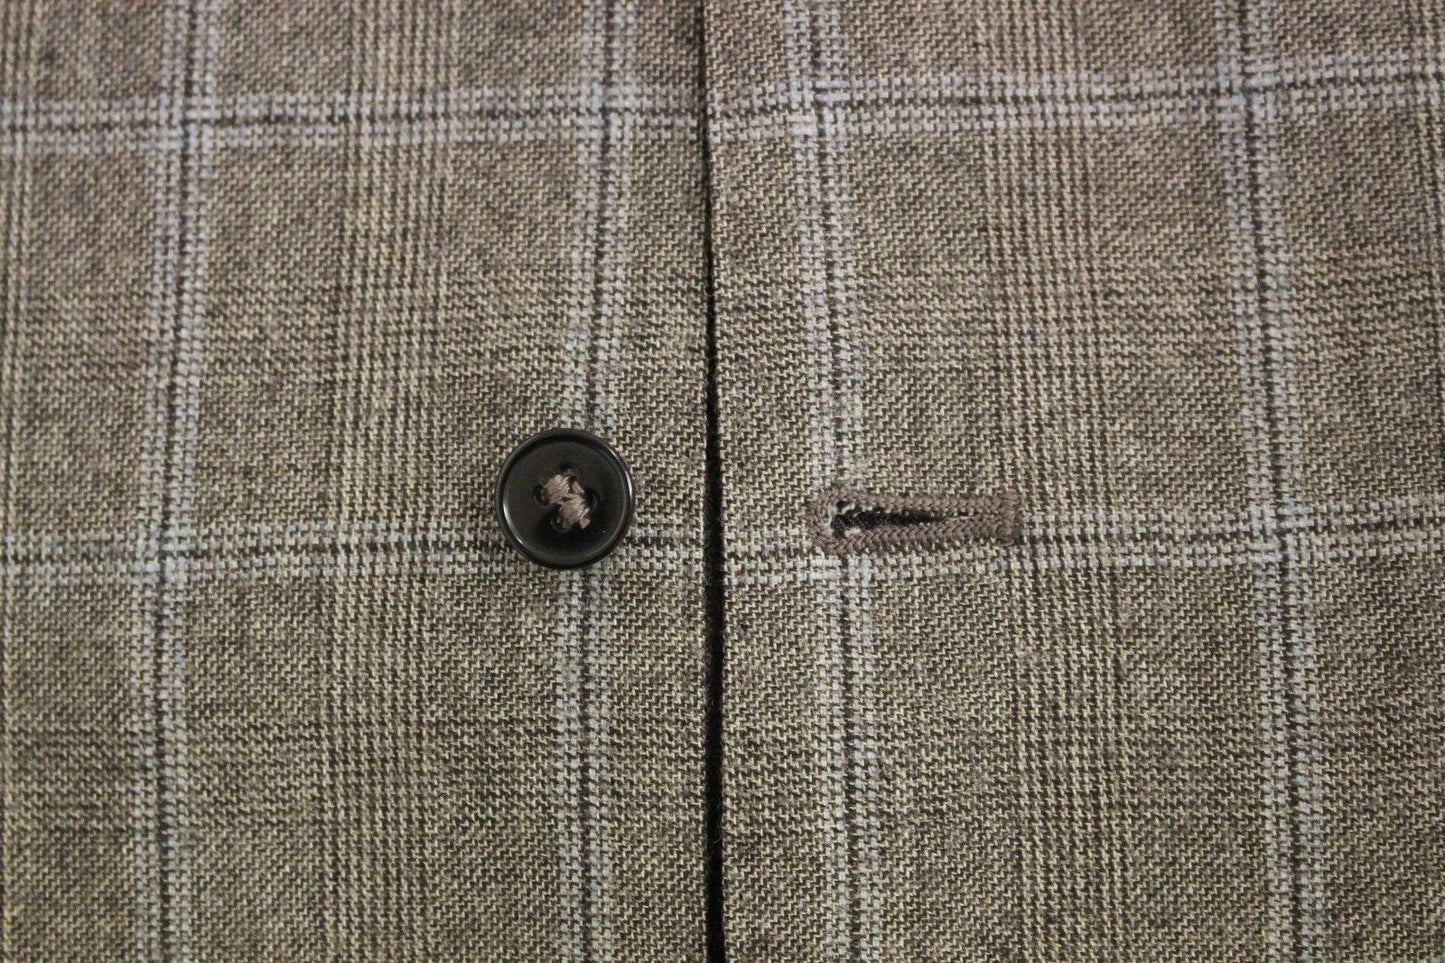 Brown Wool Single Breasted Vest Gilet